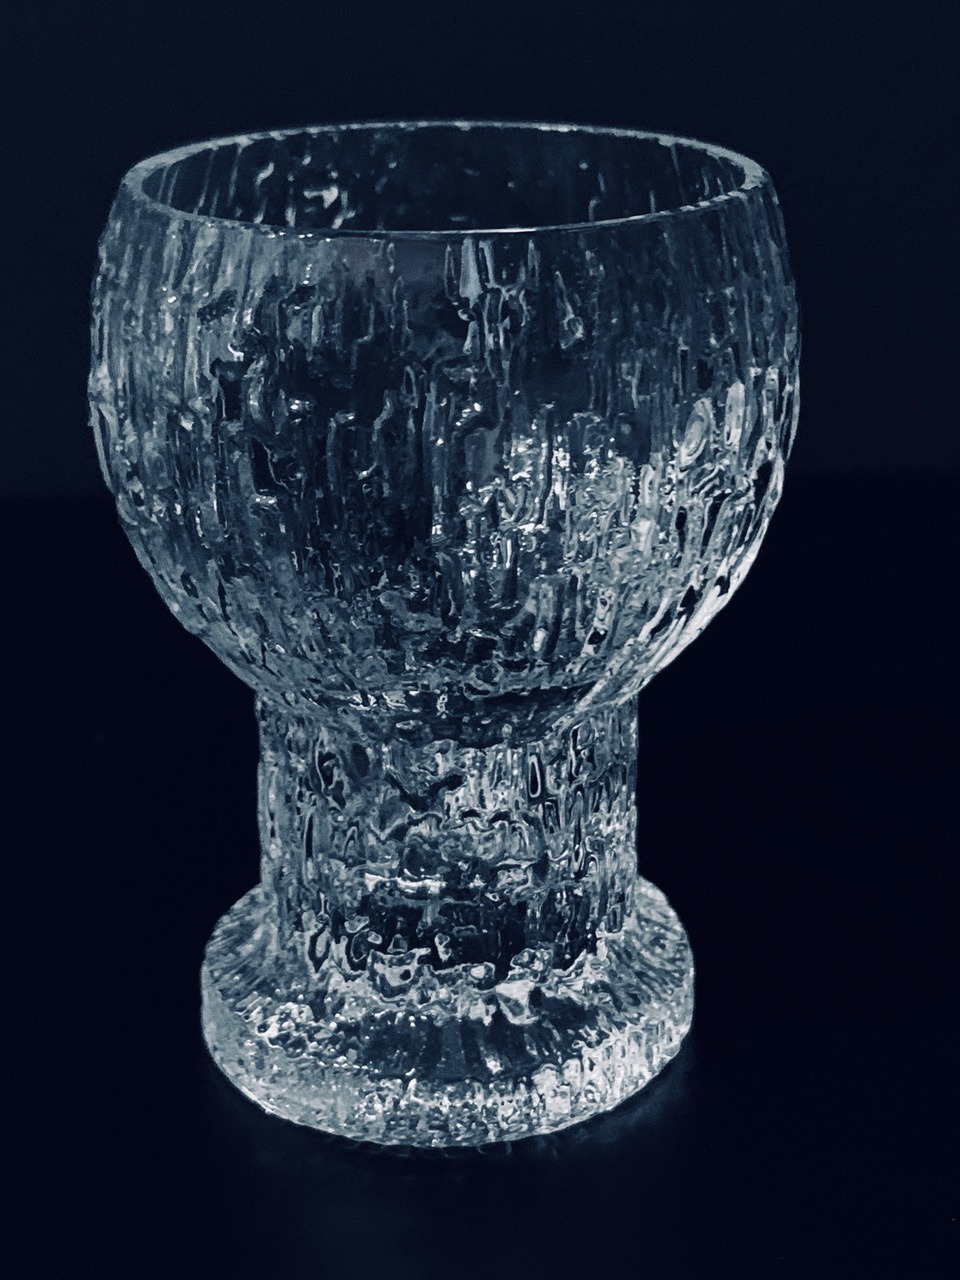 Abbildung des in dieser Anzeige angebotenen Iittala Timo Sarpaneva shotglasses Kekkerit 3er-Set.